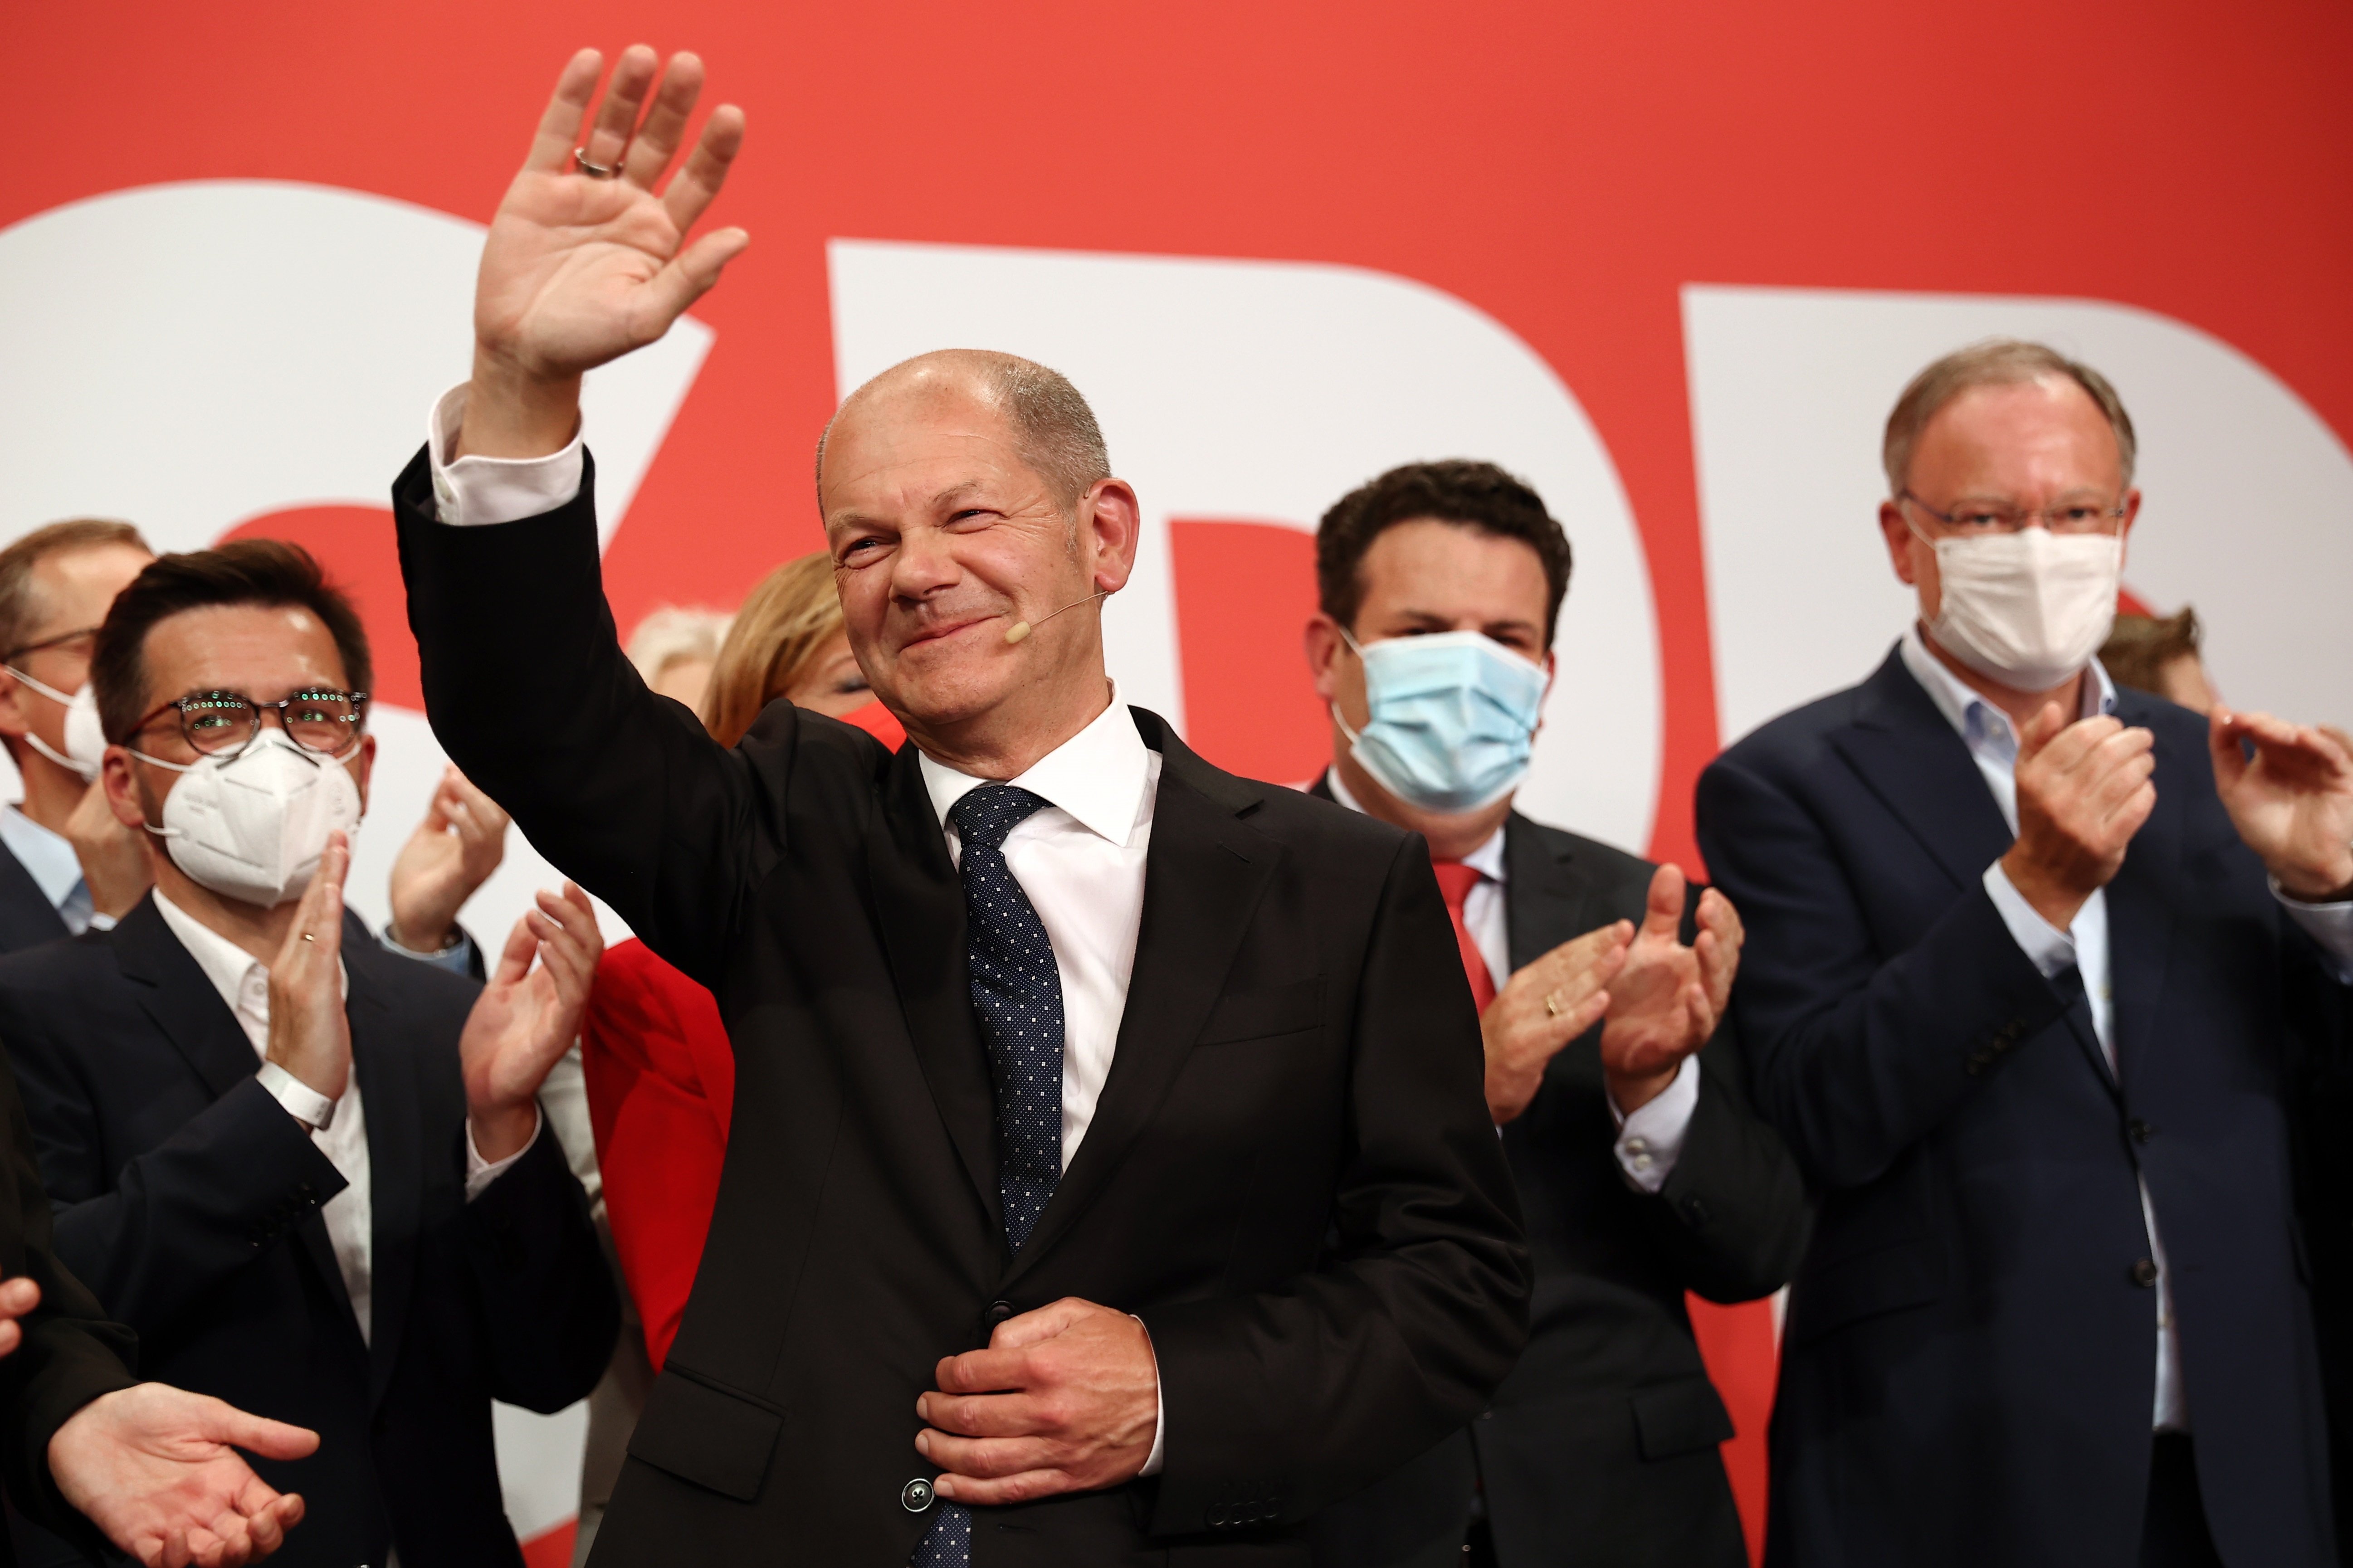 Els socialdemòcrates alemanys volen liderar el nou govern, però mostren prudència